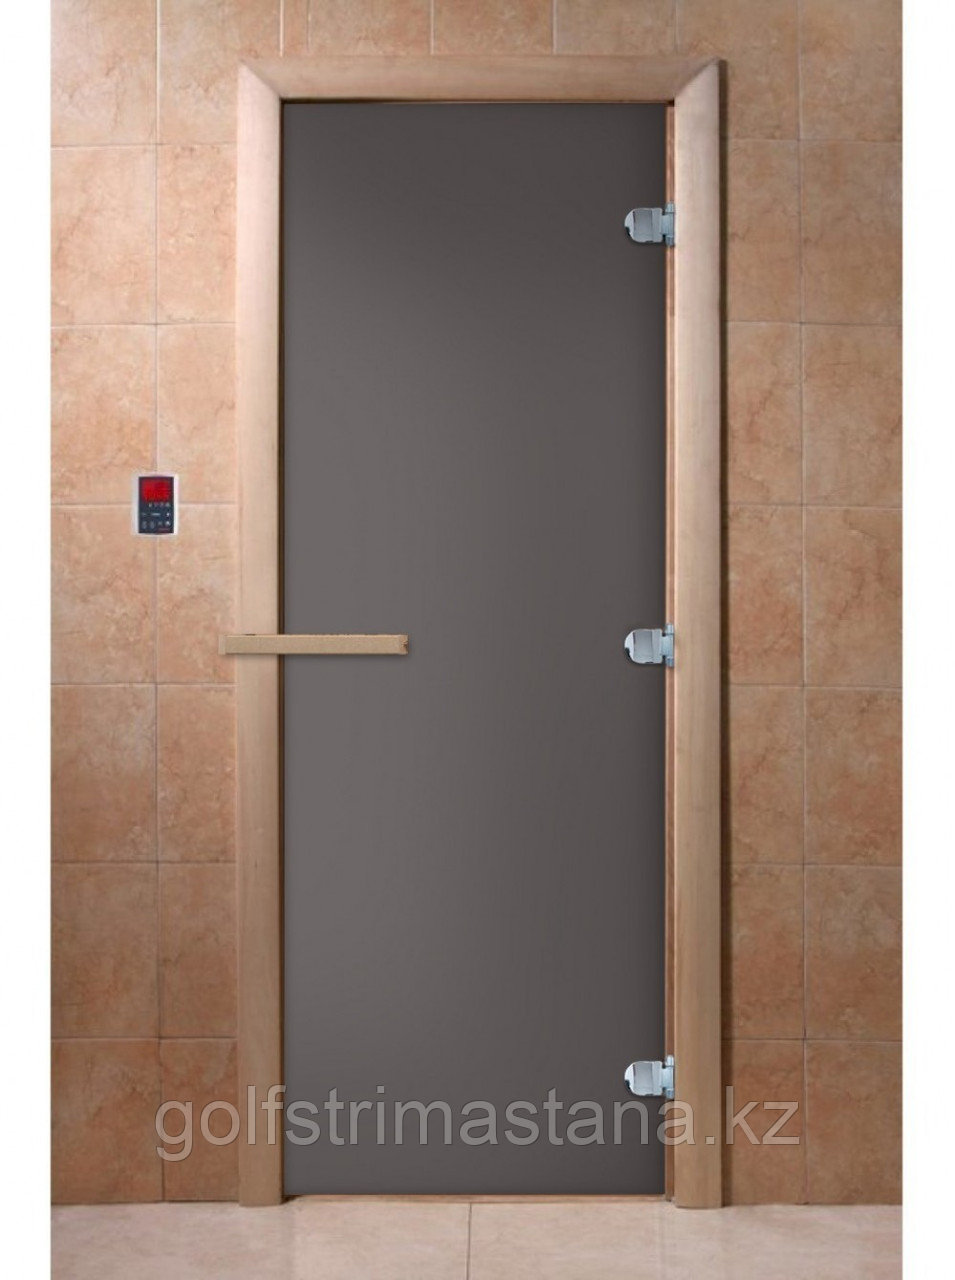 Стеклянная дверь для сауны и бани "Затмение Графит матовый"